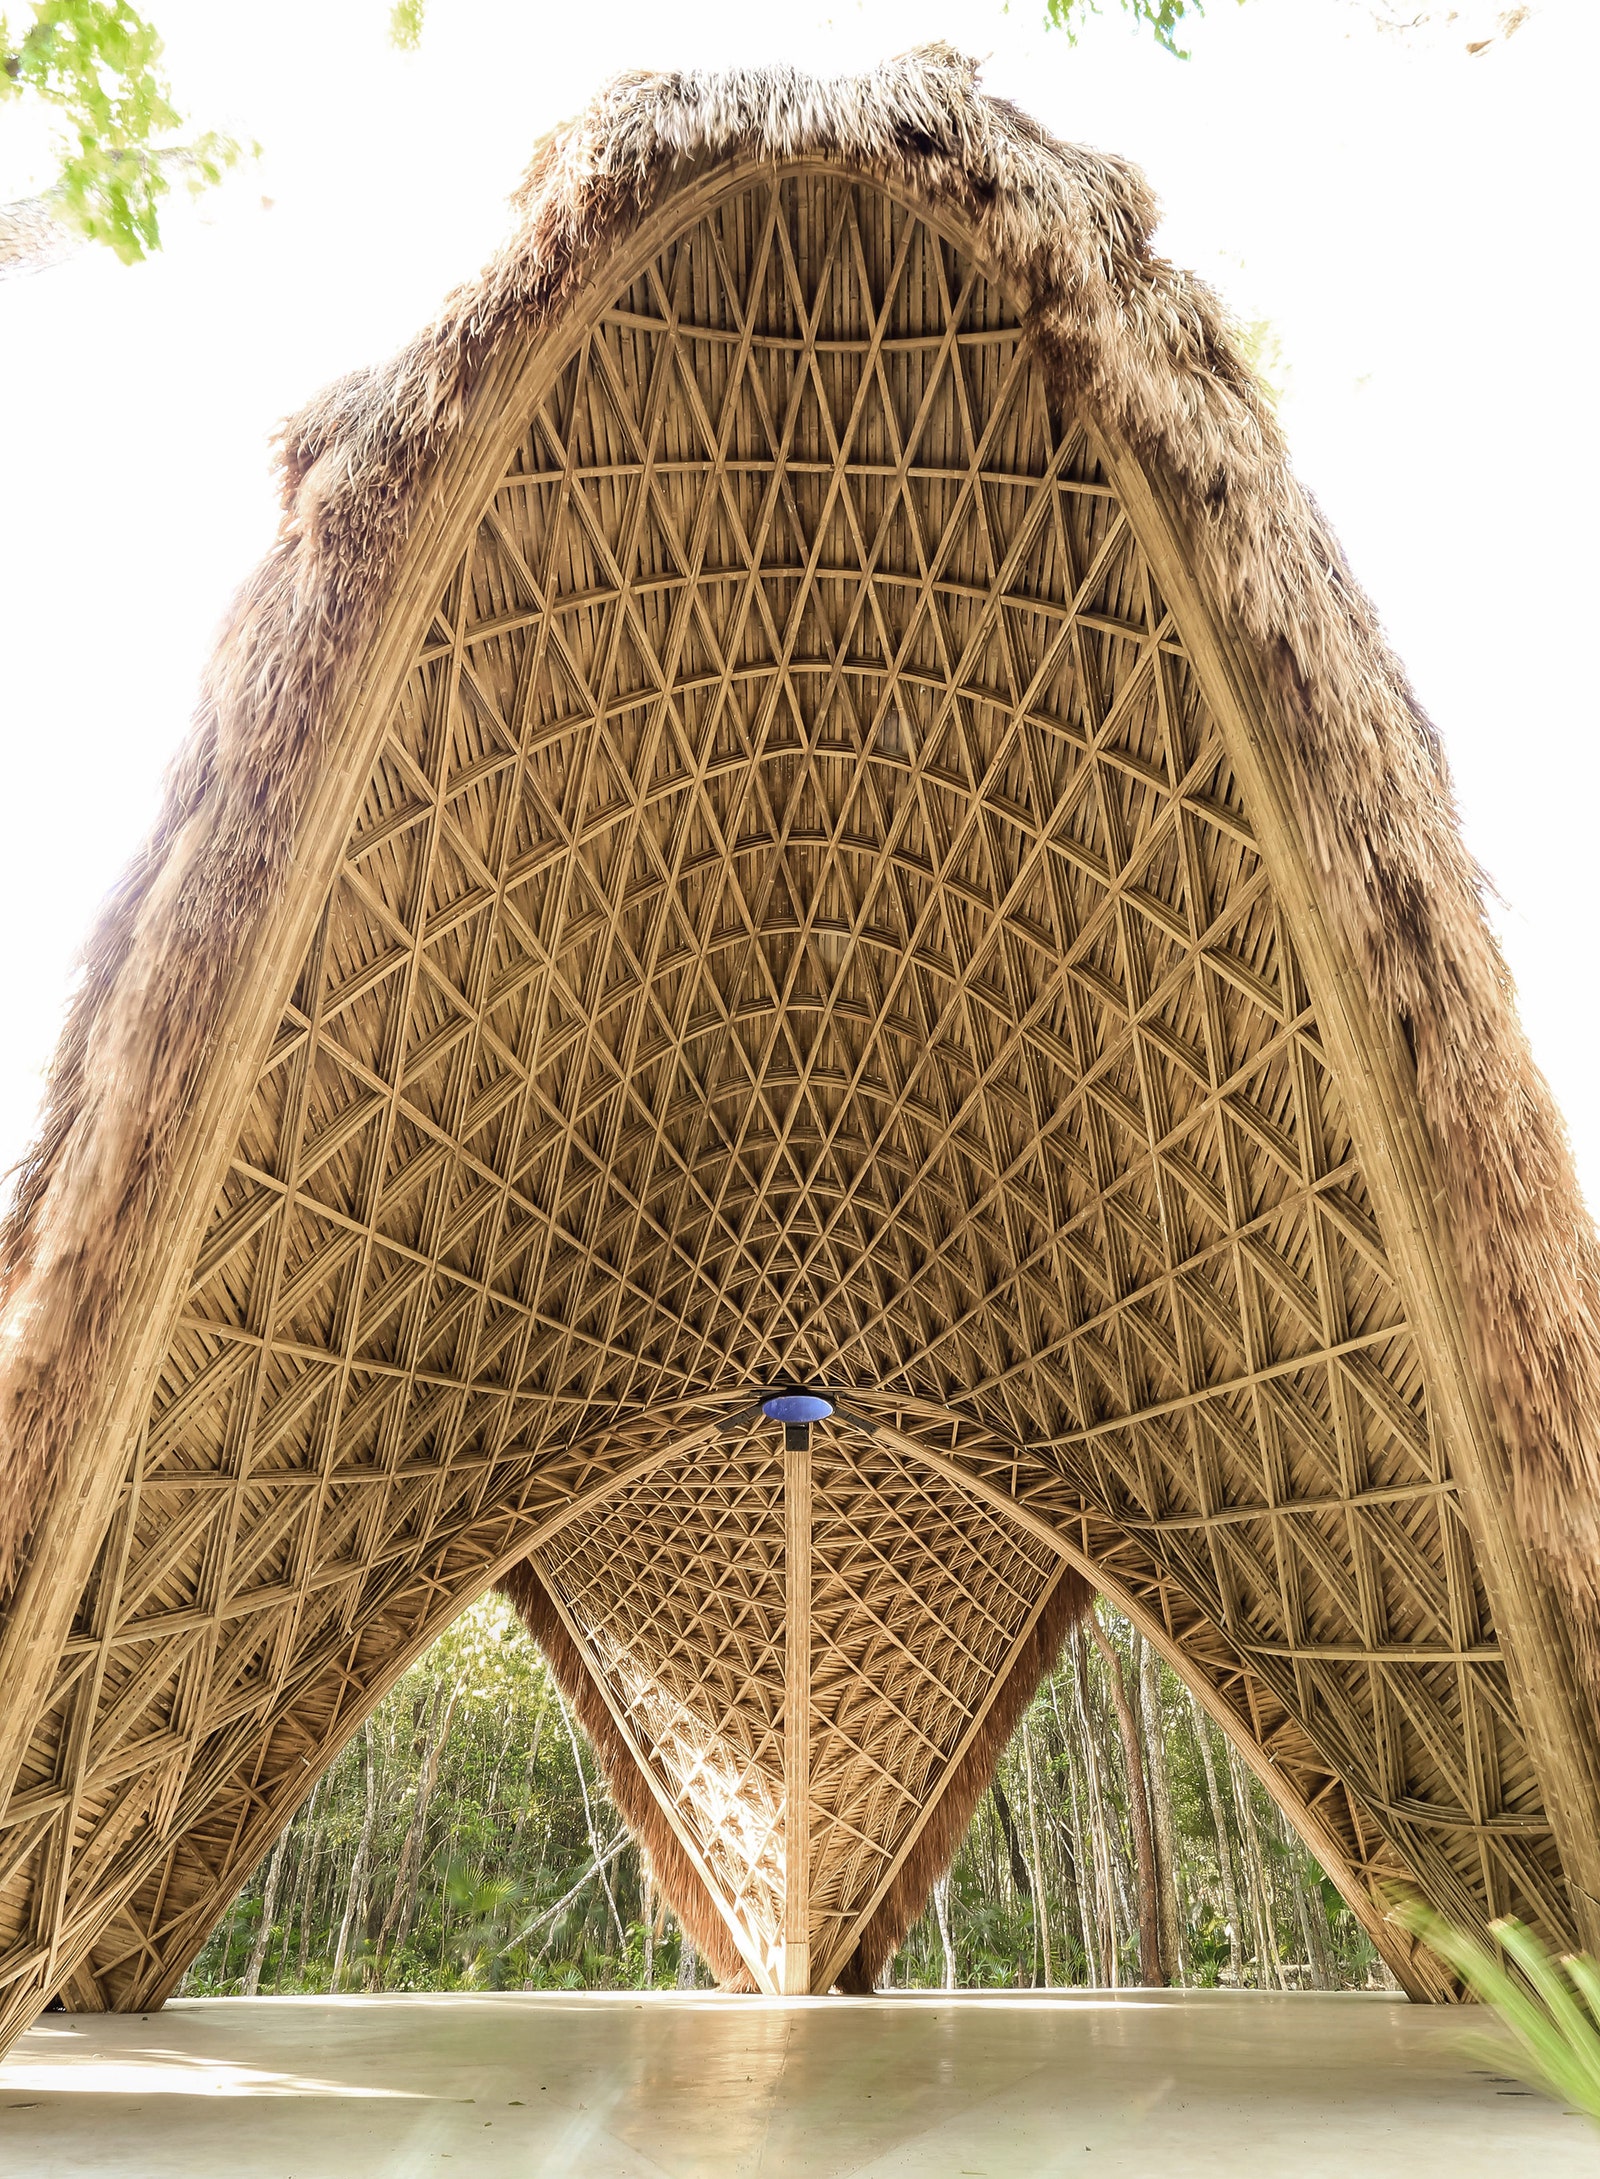 Бамбуковый павильон в джунглях Мексики